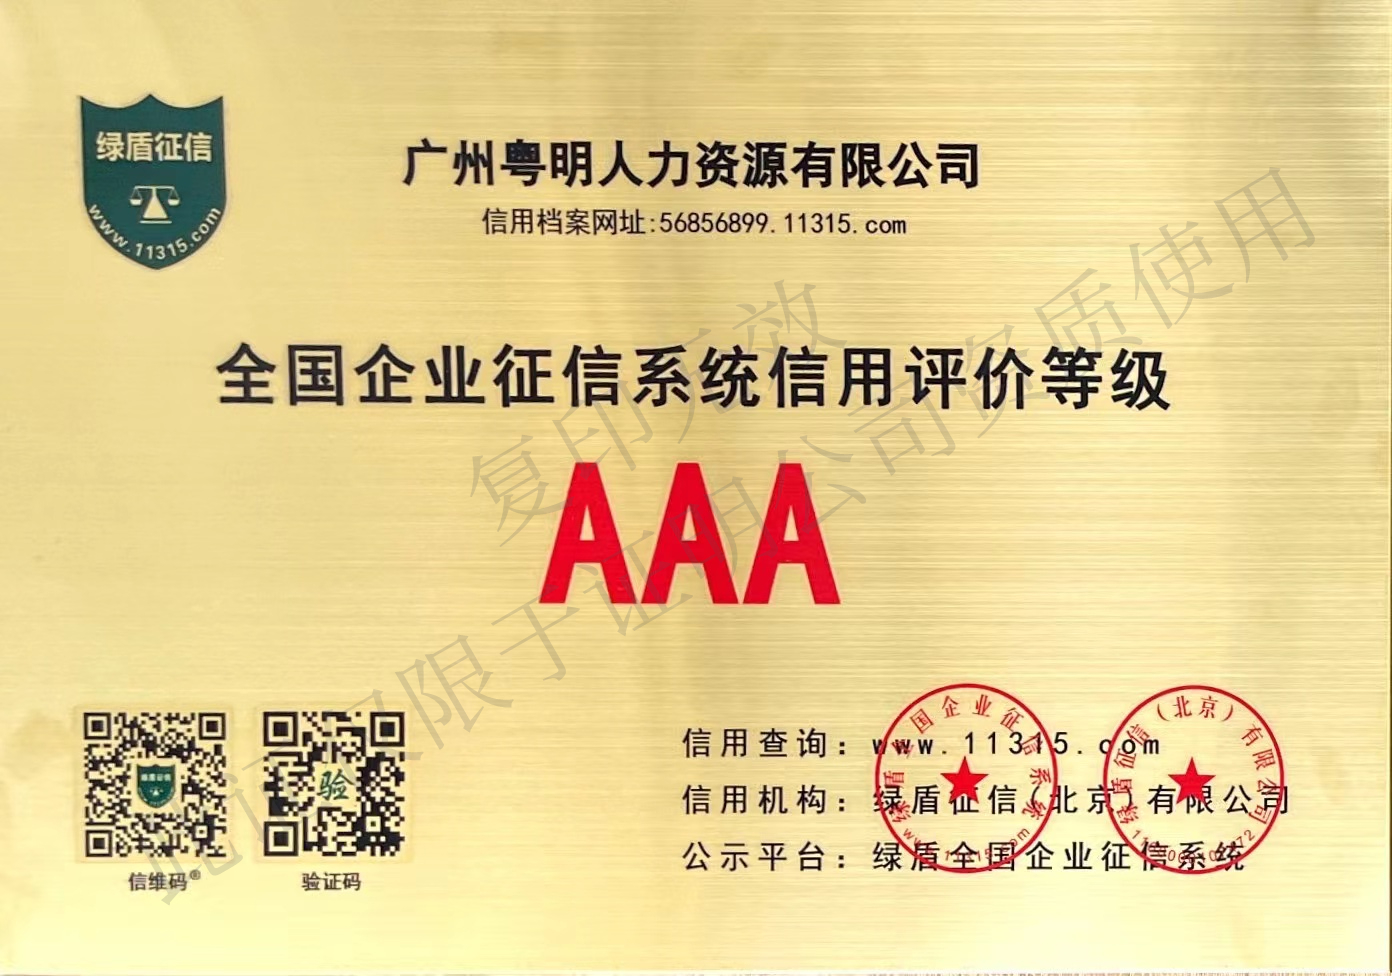 绿盾征信“AAA”级信用证书